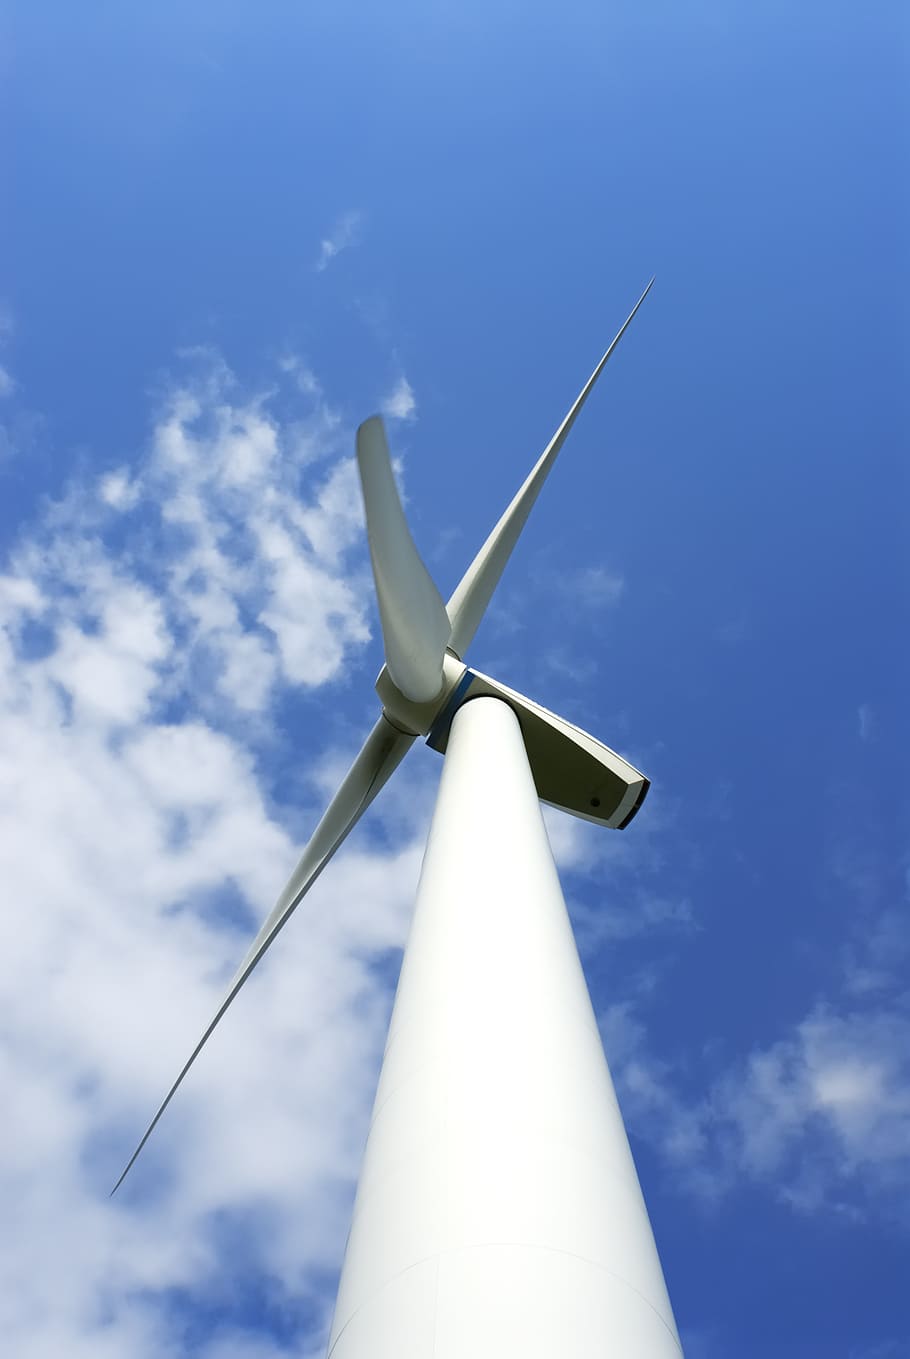 tenaga angin, energi, udara, angin, konservasi lingkungan, turbin angin, energi terbarukan, turbin, energi alternatif, bahan bakar dan pembangkit listrik